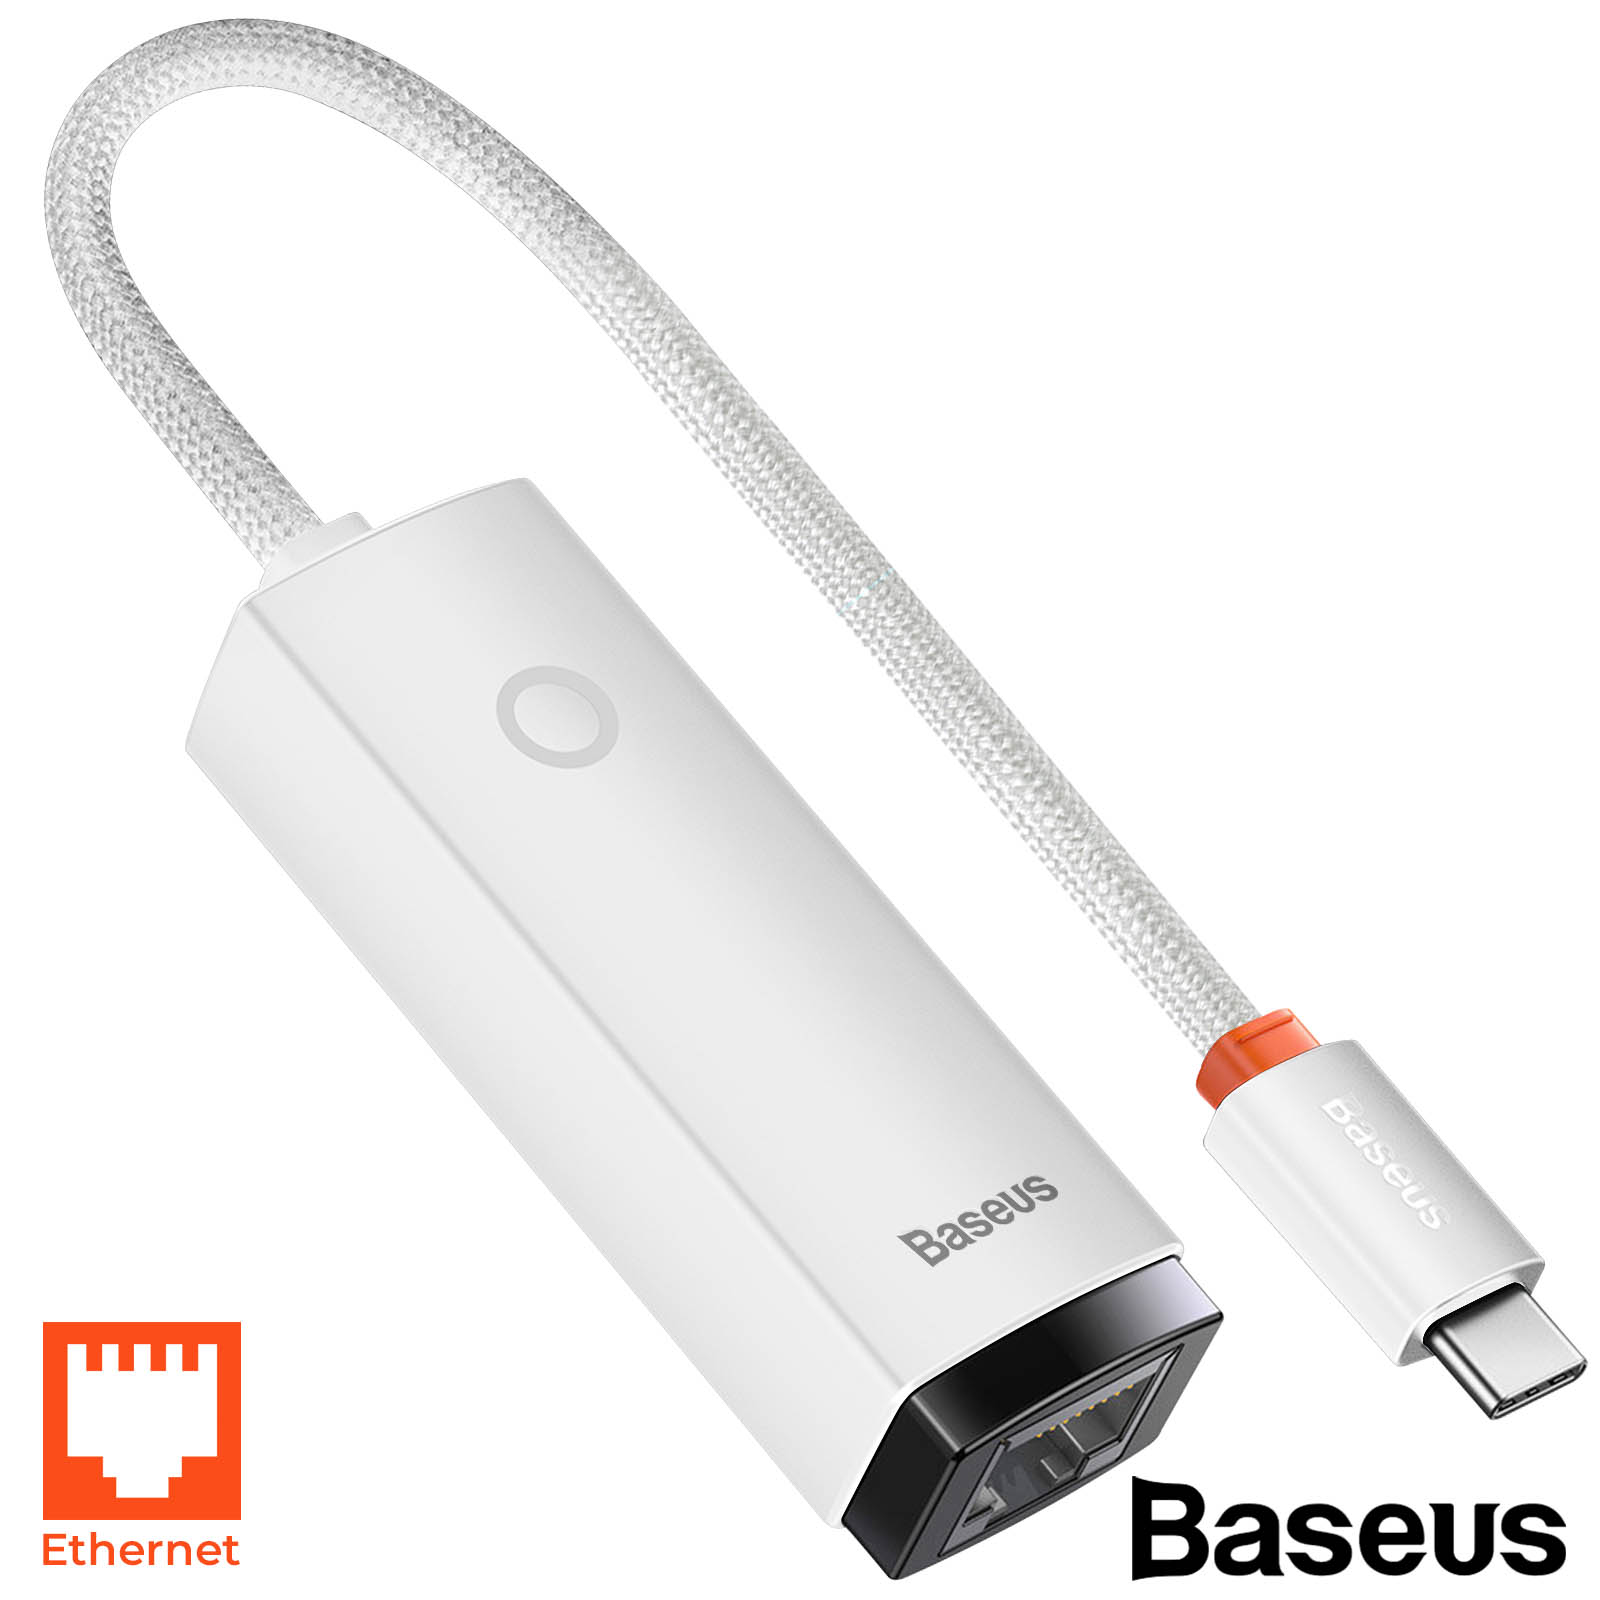 Câble USB vers USB-C VOOC 65W, Produit officiel Oppo DL129 - Blanc 1m